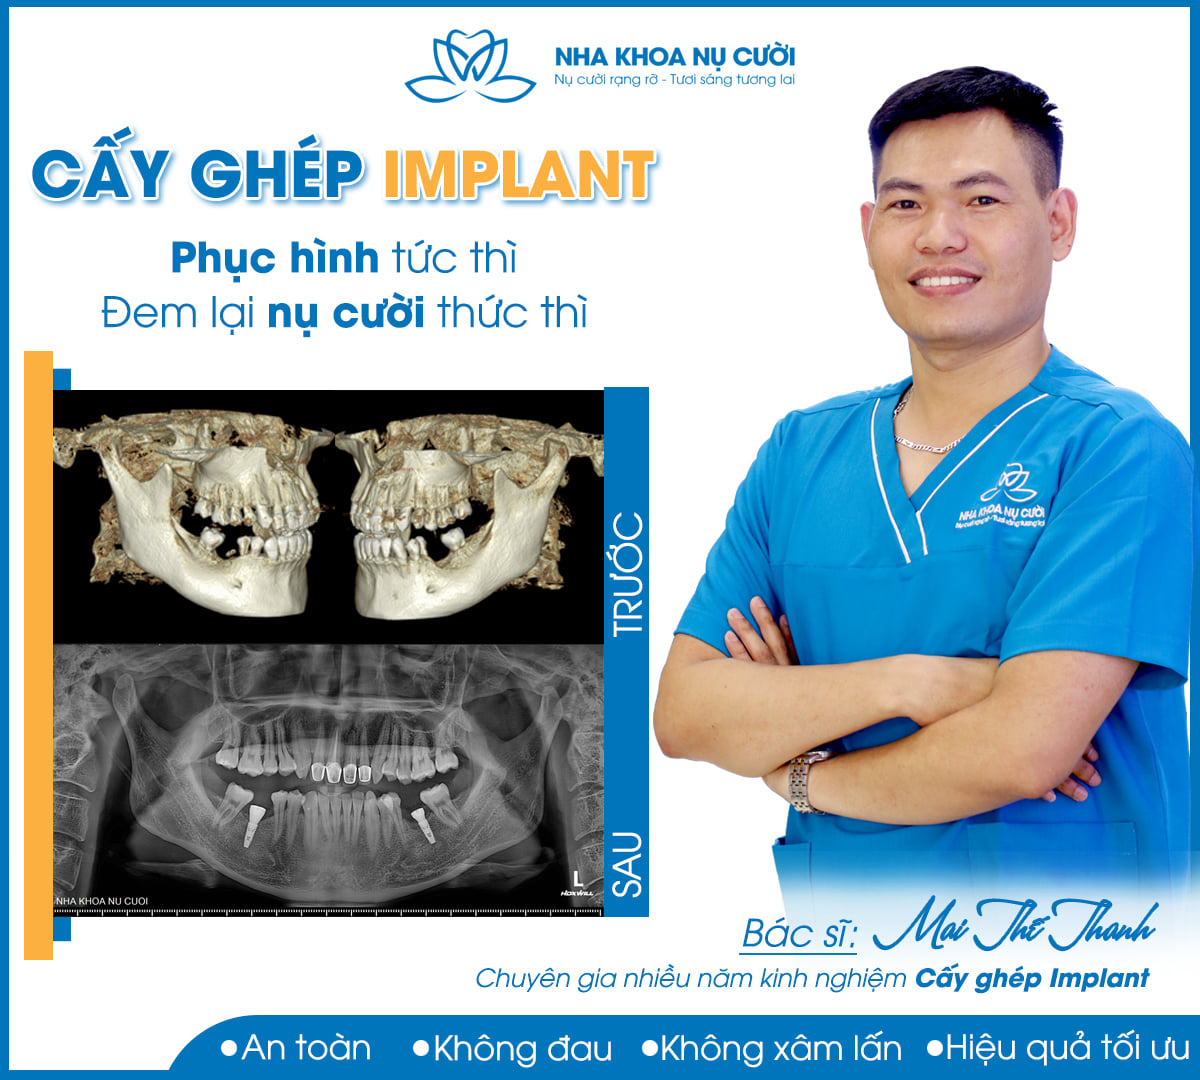 Cấy ghép Implant, giải pháp toàn diện phục hồi răng mất.